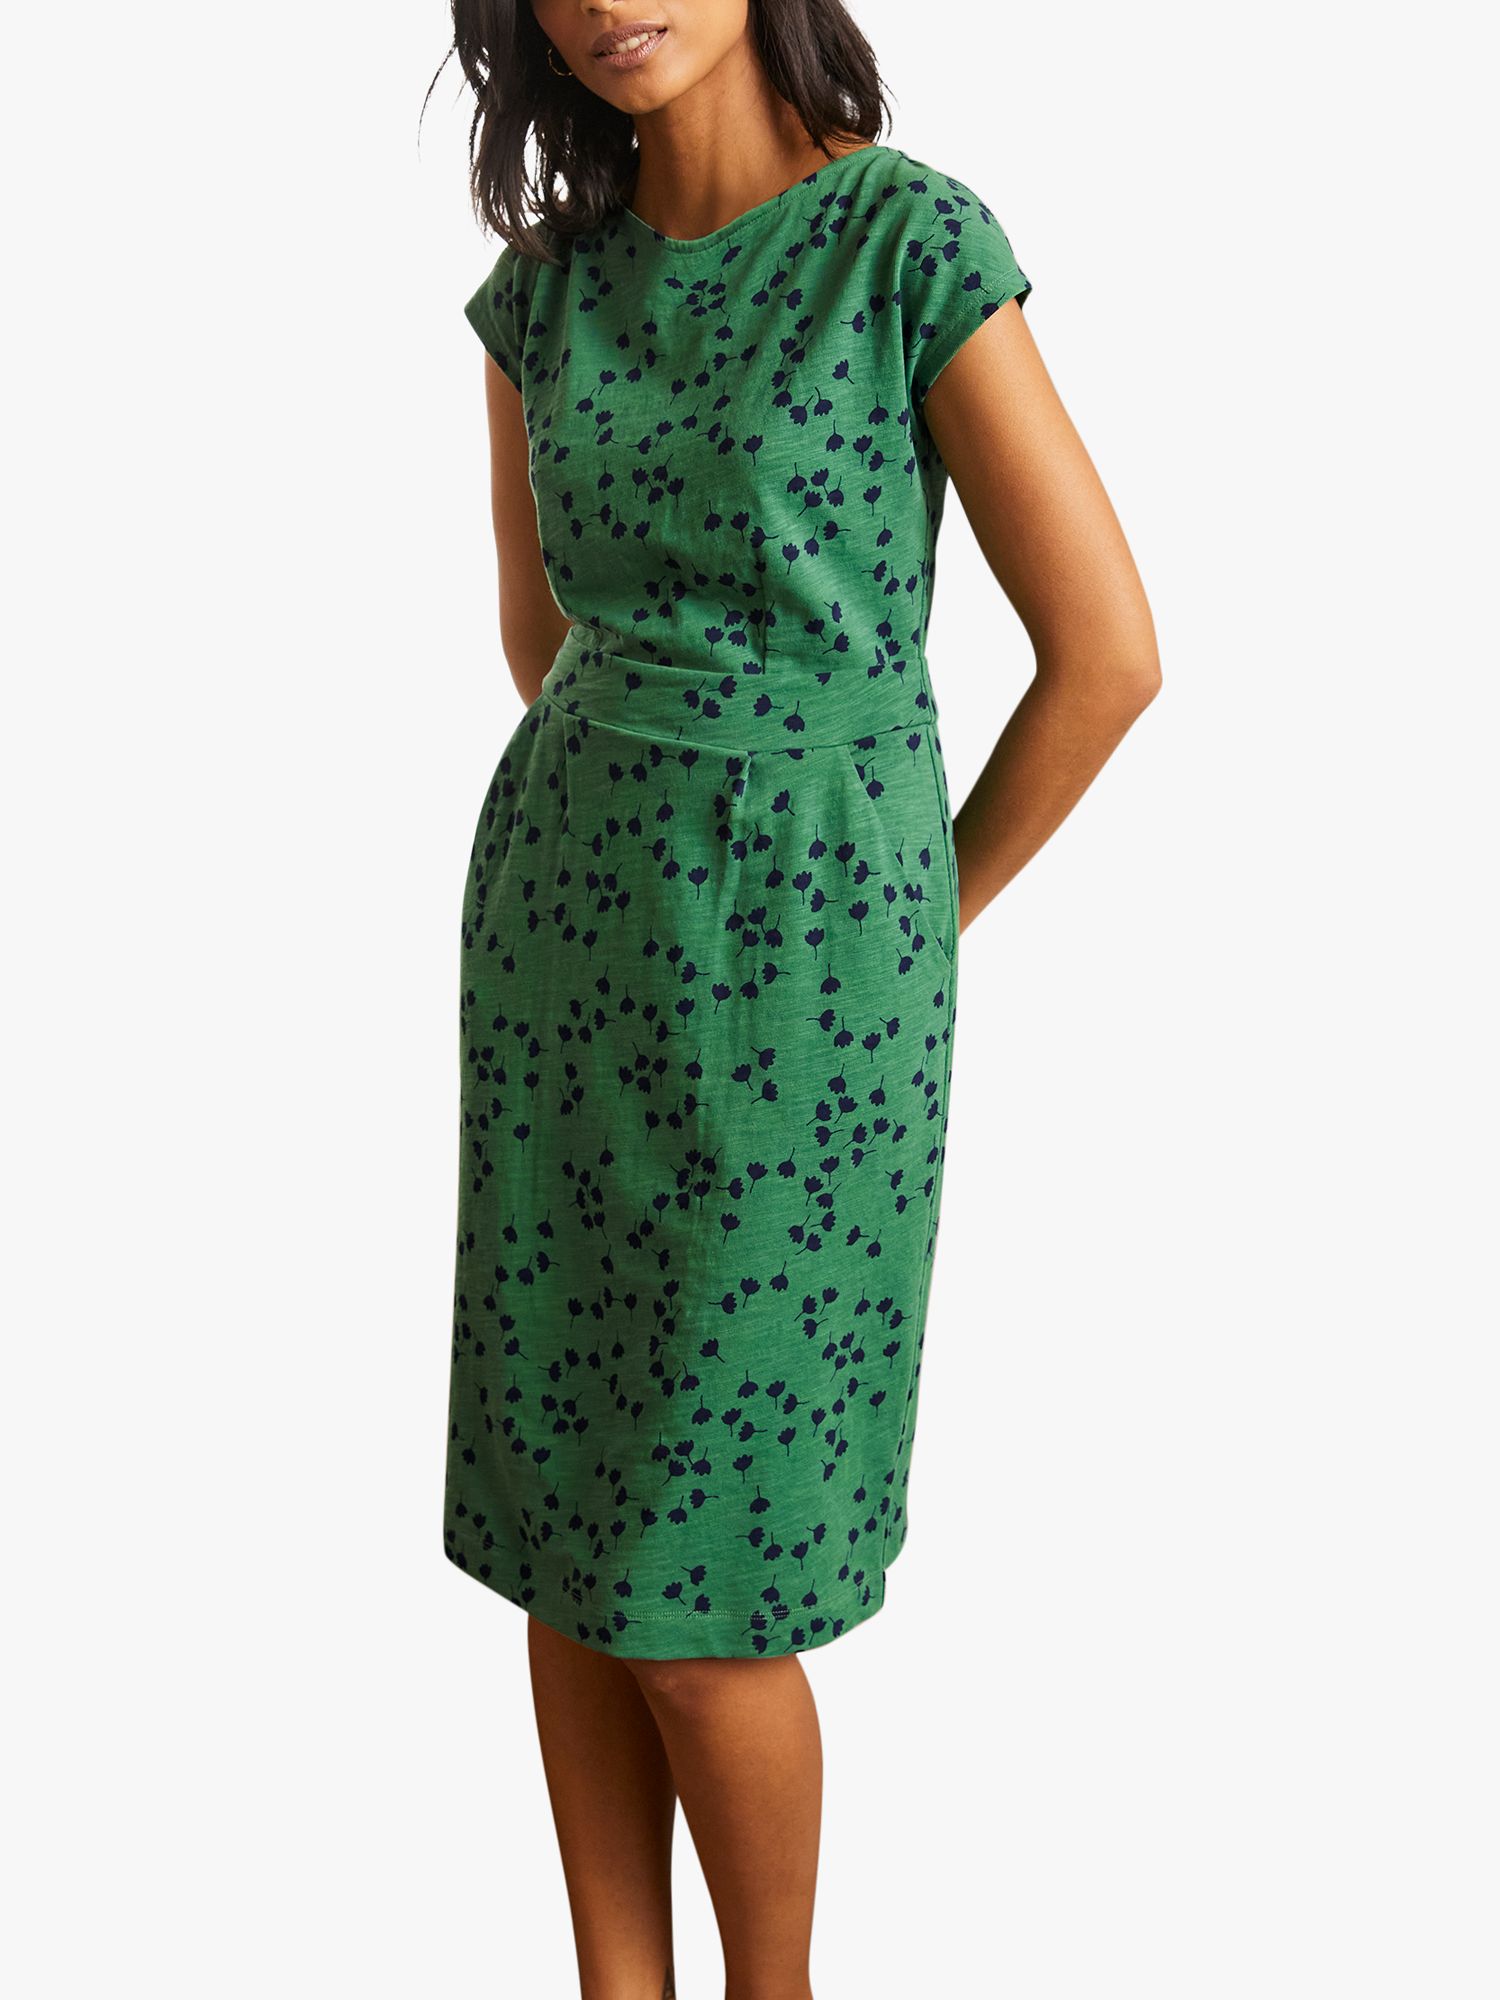 Boden Florrie Jersey Dress, Green